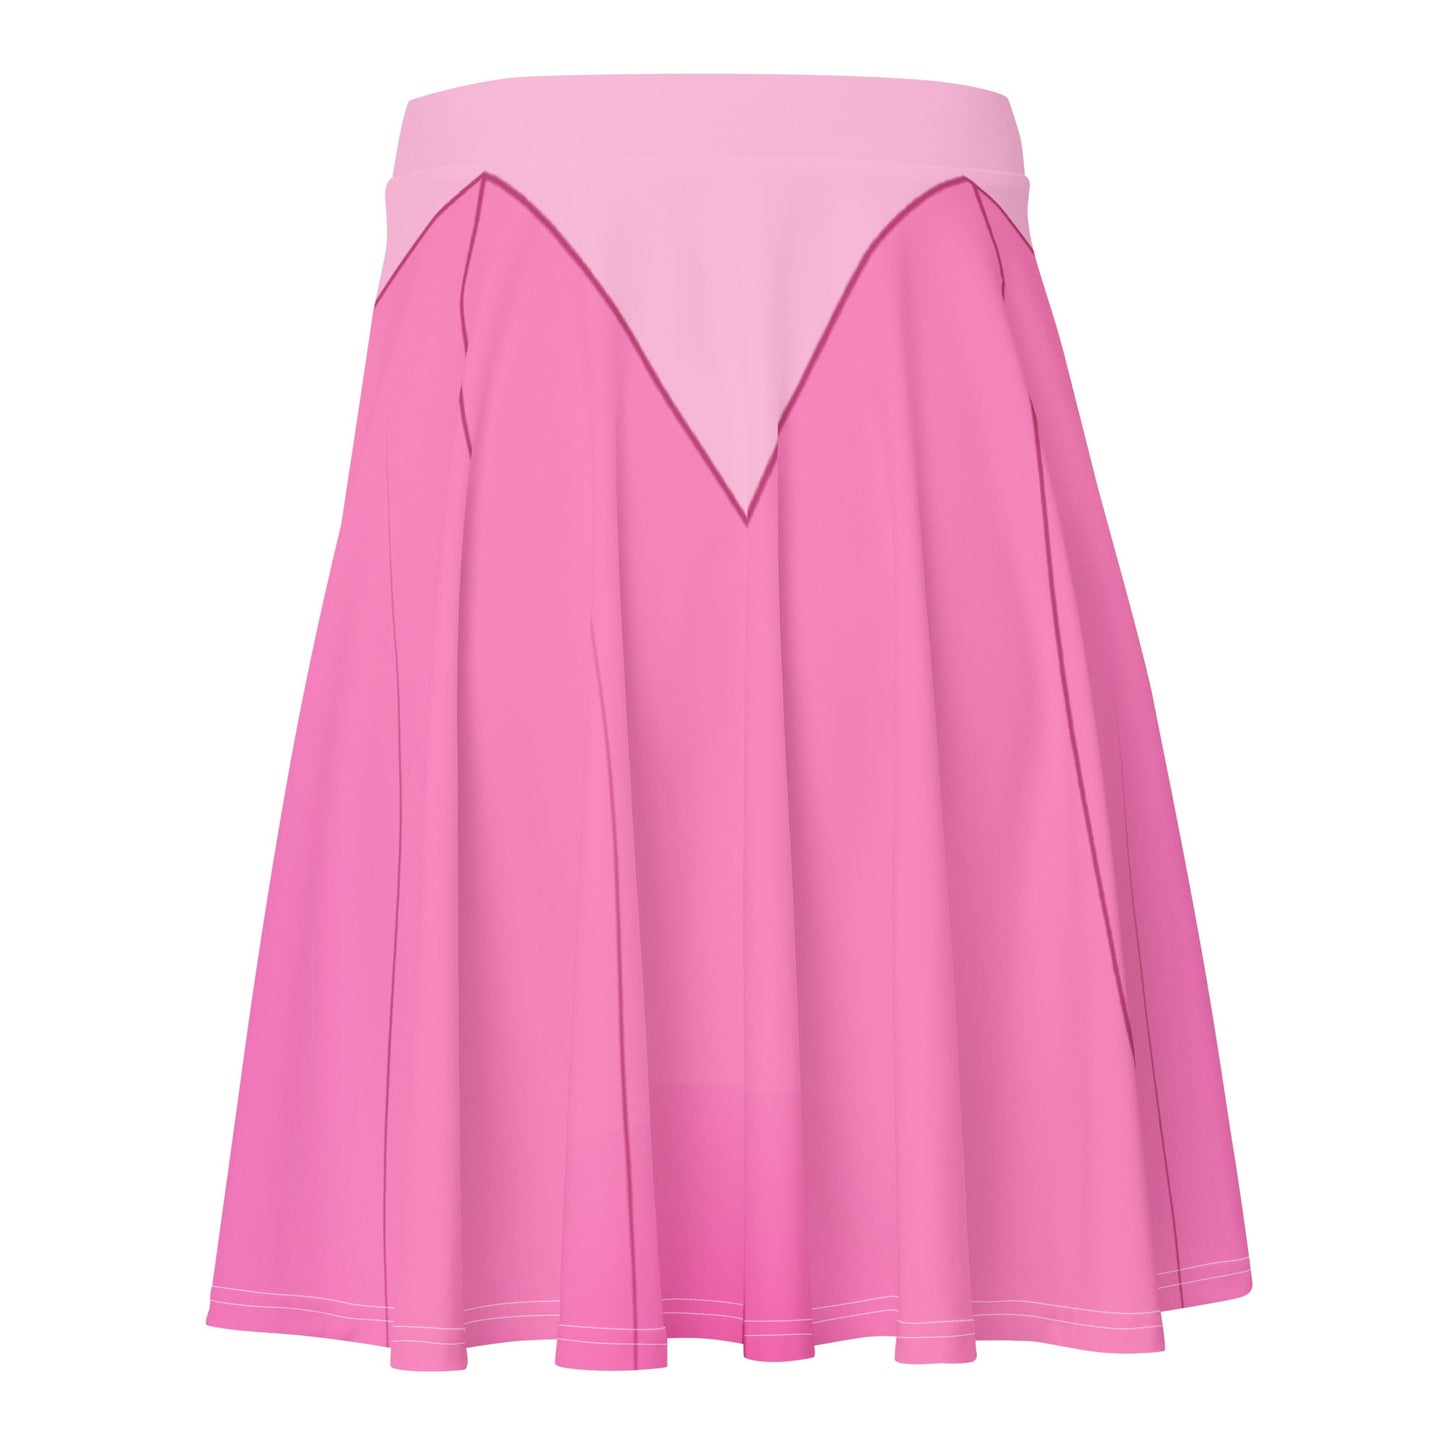 Sleeping Princess Skater Skirt aurorabriar rosecoordinating styles#tag4##tag5##tag6#